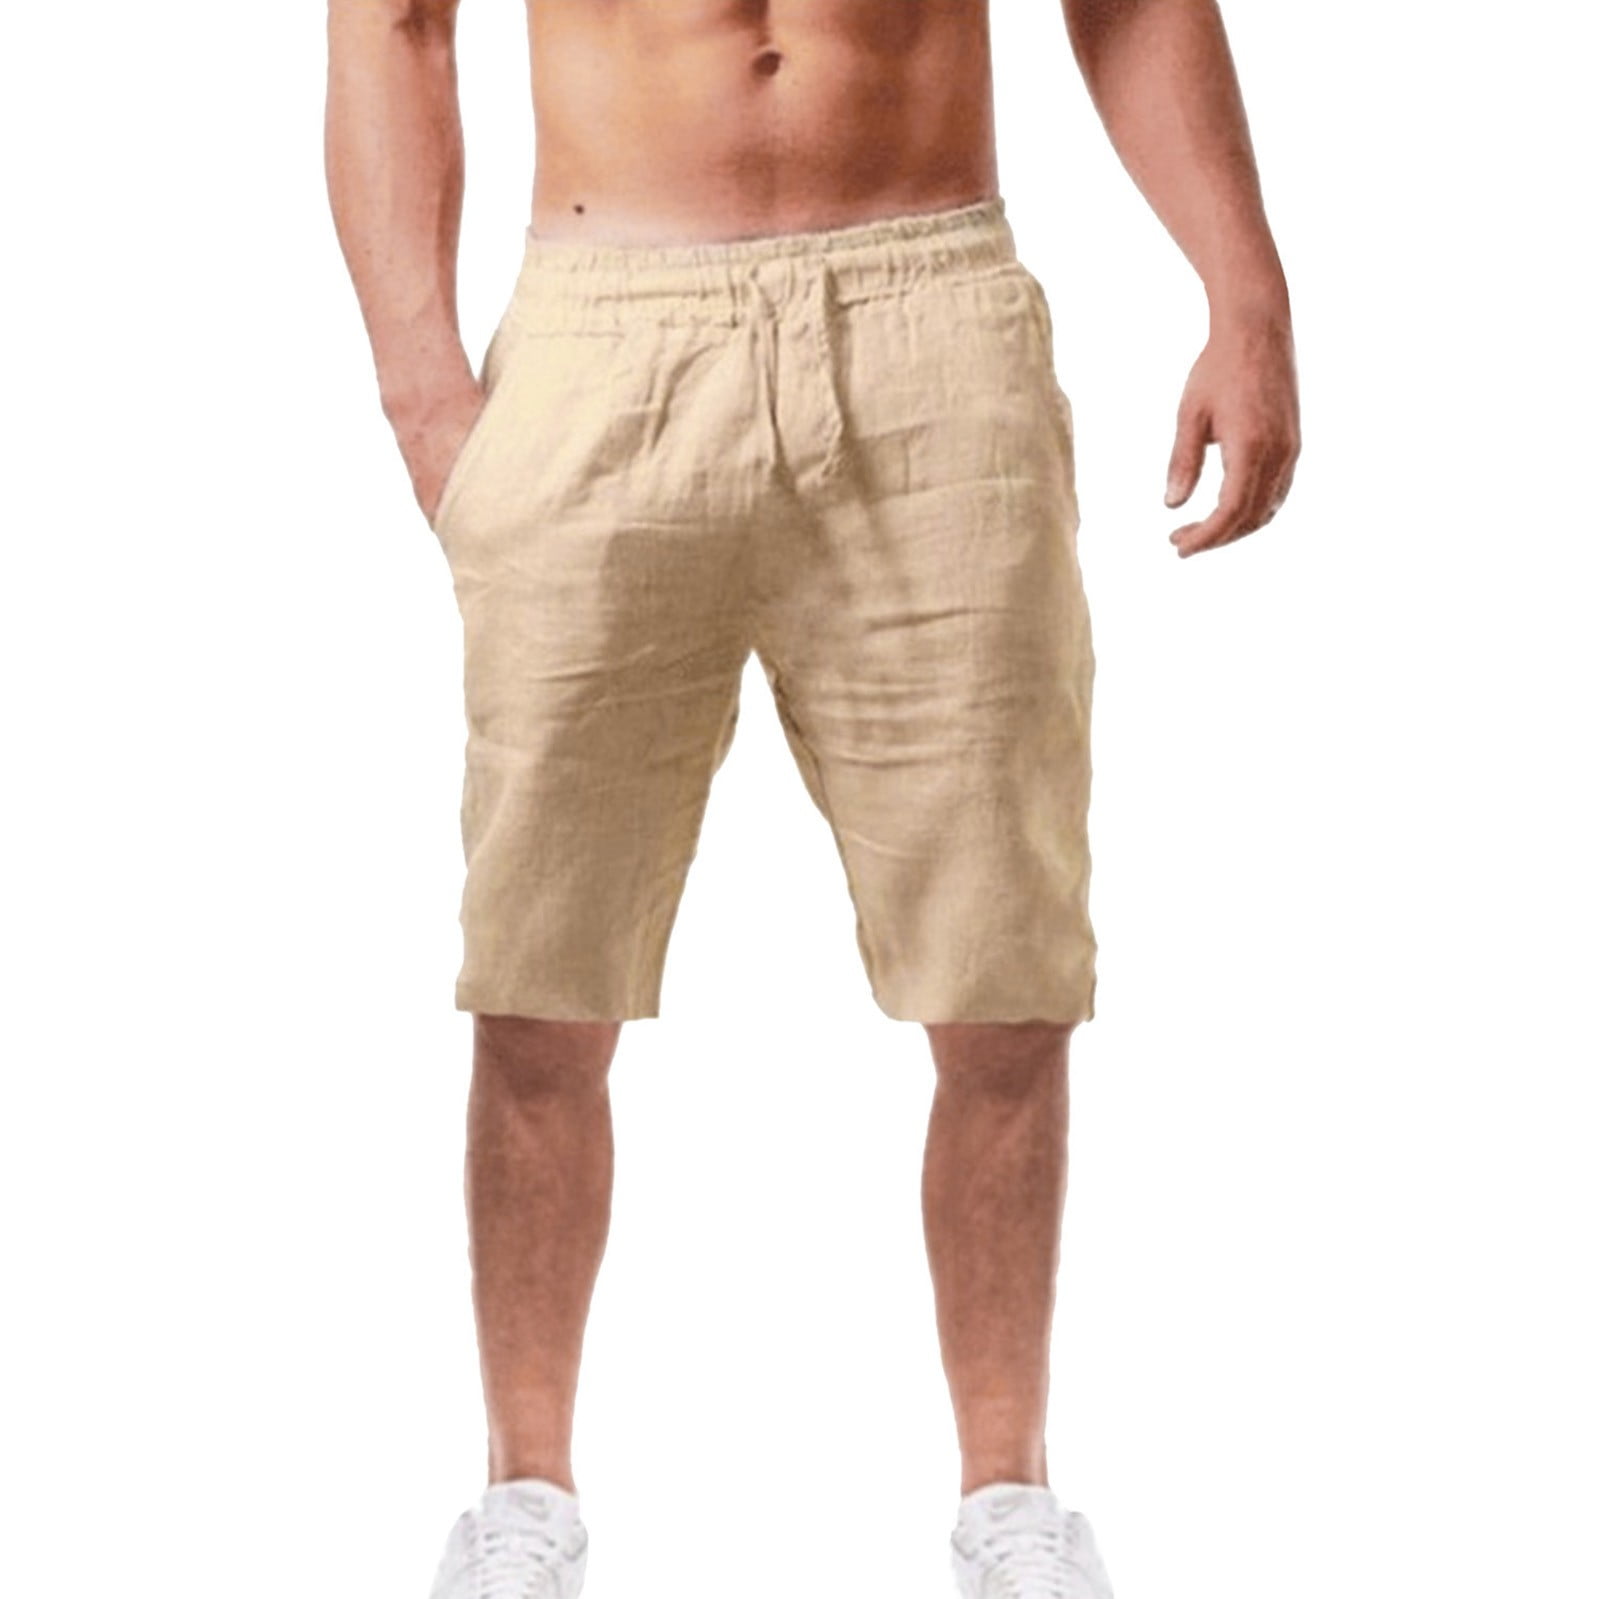 HSMQHJWE Mens Wear Mens Compression Shorts Mens Summer Solid Color